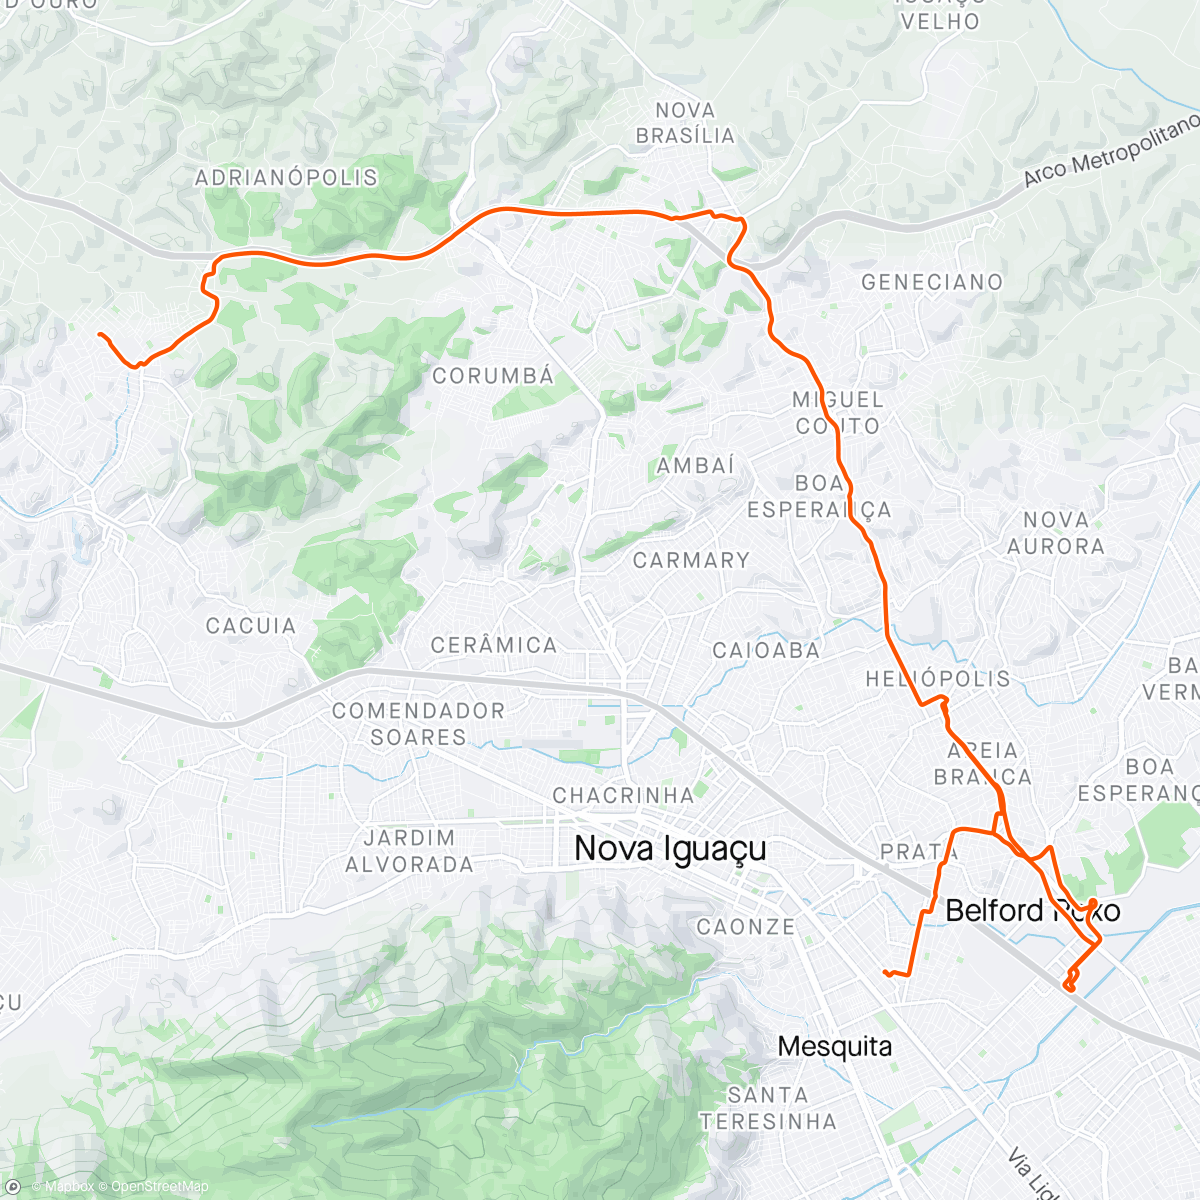 Mapa da atividade, Bike Night Belford Roxo / Heliópolis em chamas.